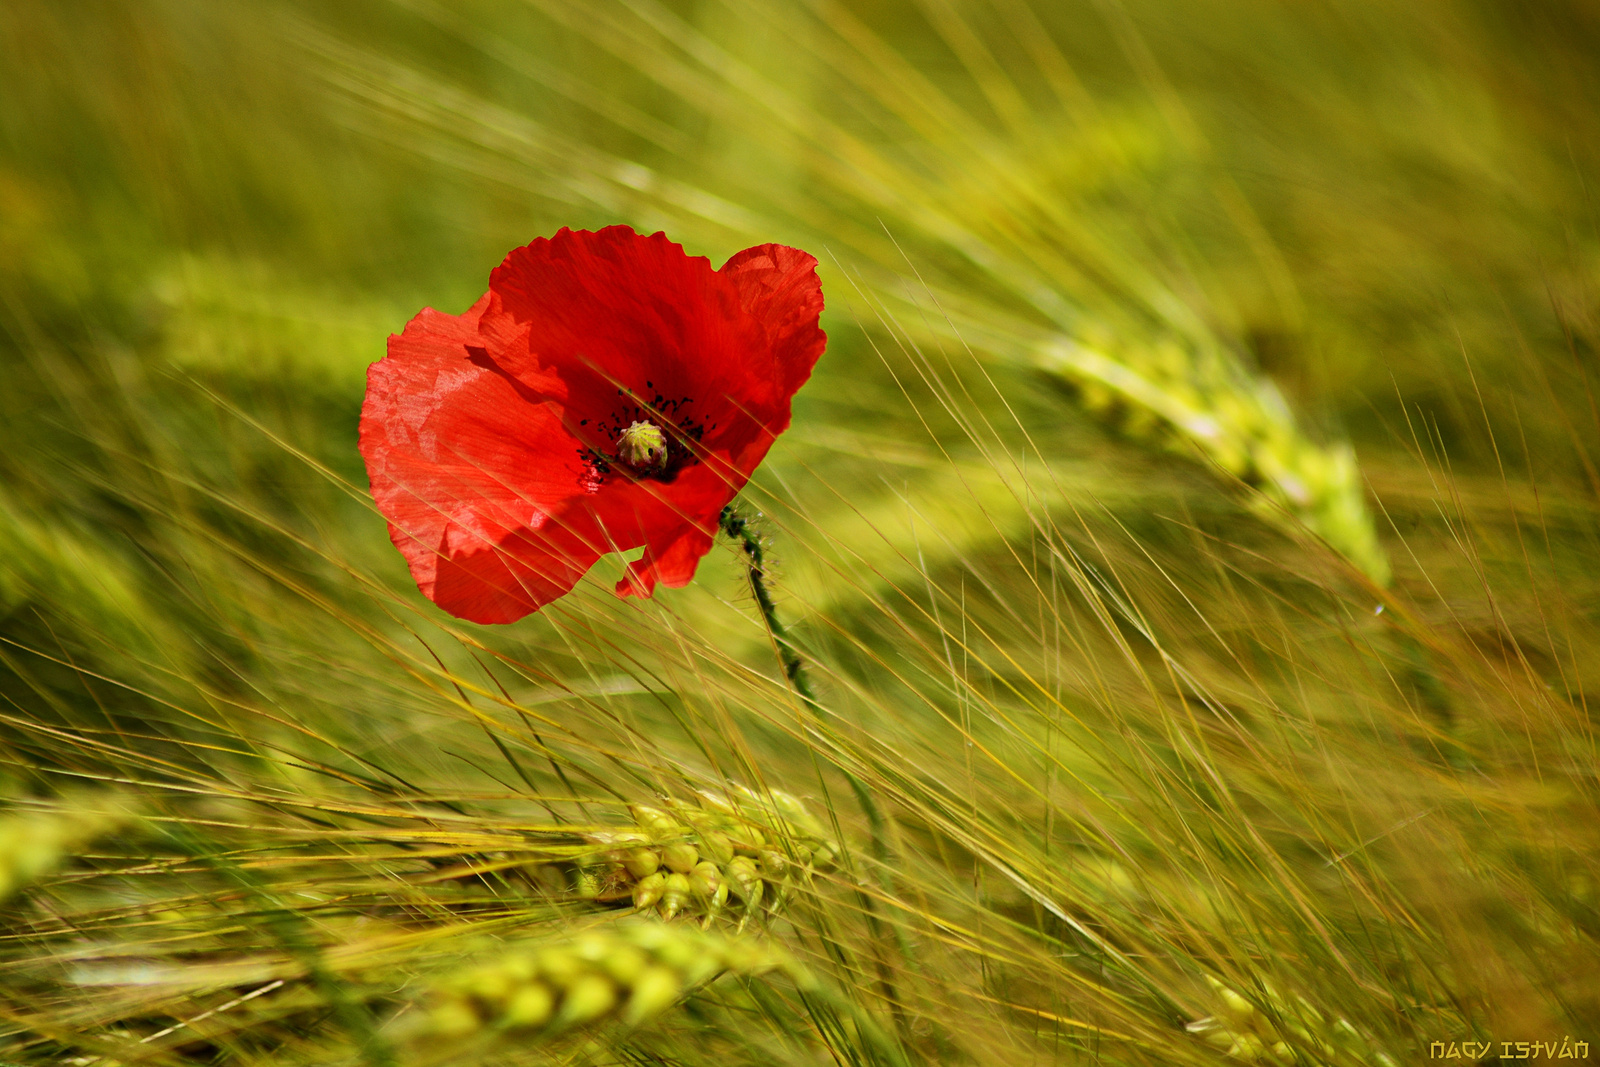 Poppy flower in grain field #3